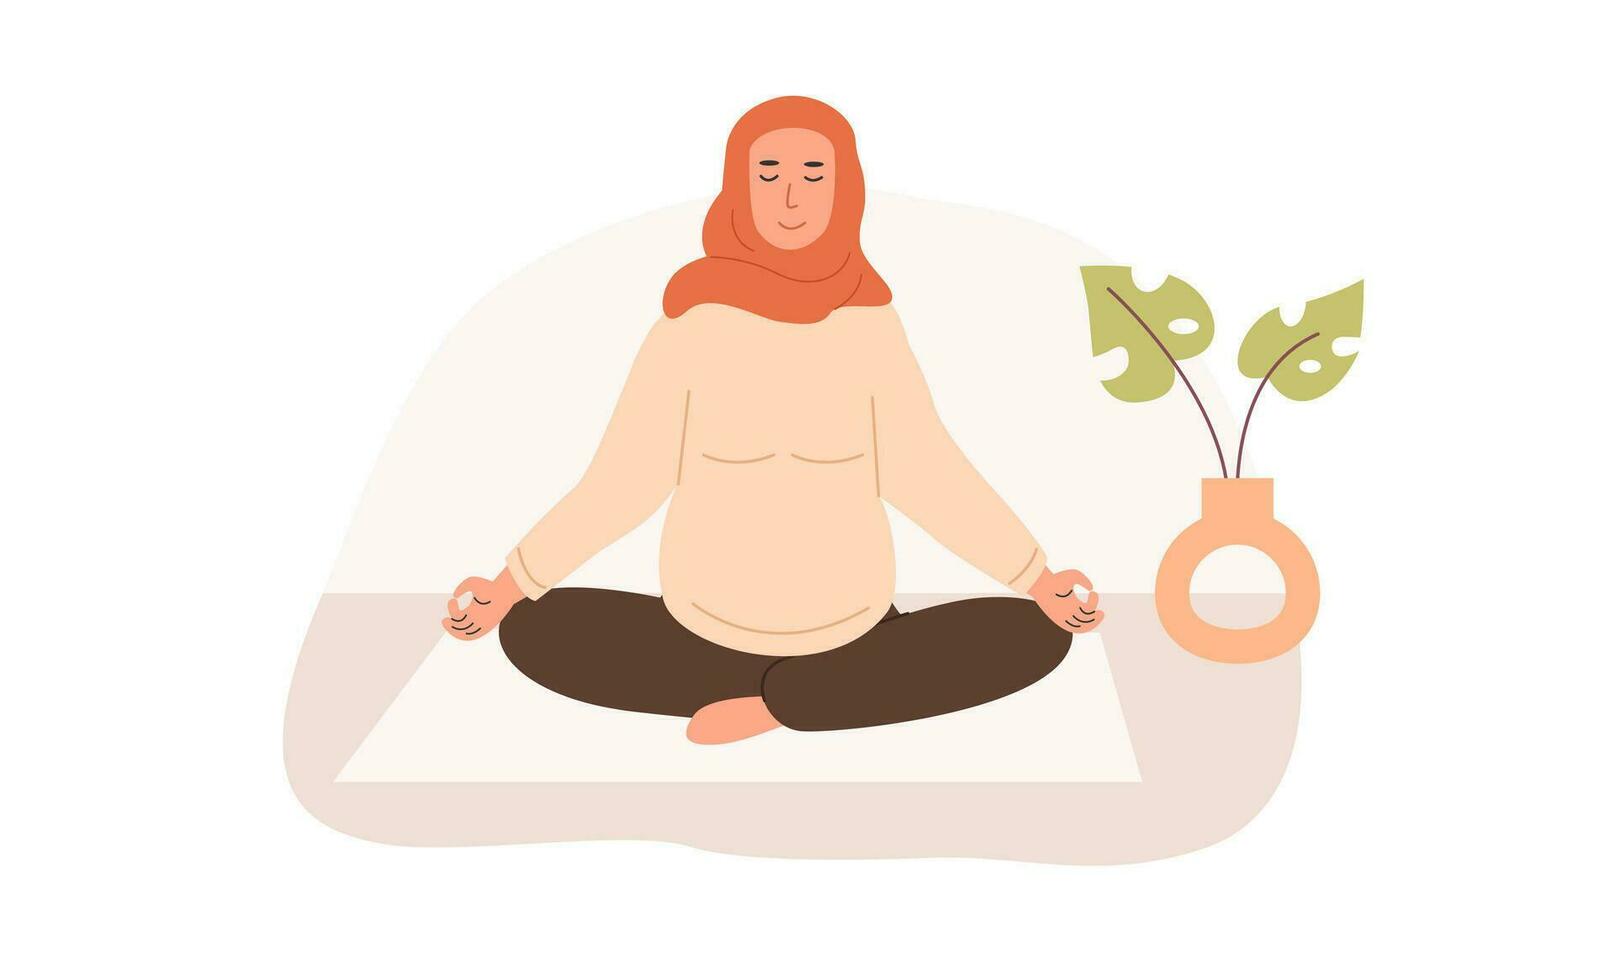 zwanger moslim vrouw mediteren Bij huis. prenataal yoga. modern Arabisch mam in hijab zittend met poten gekruiste beoefenen meditatie. ontspannende oefening gedurende zwangerschap. vlak stijl vector illustratie.